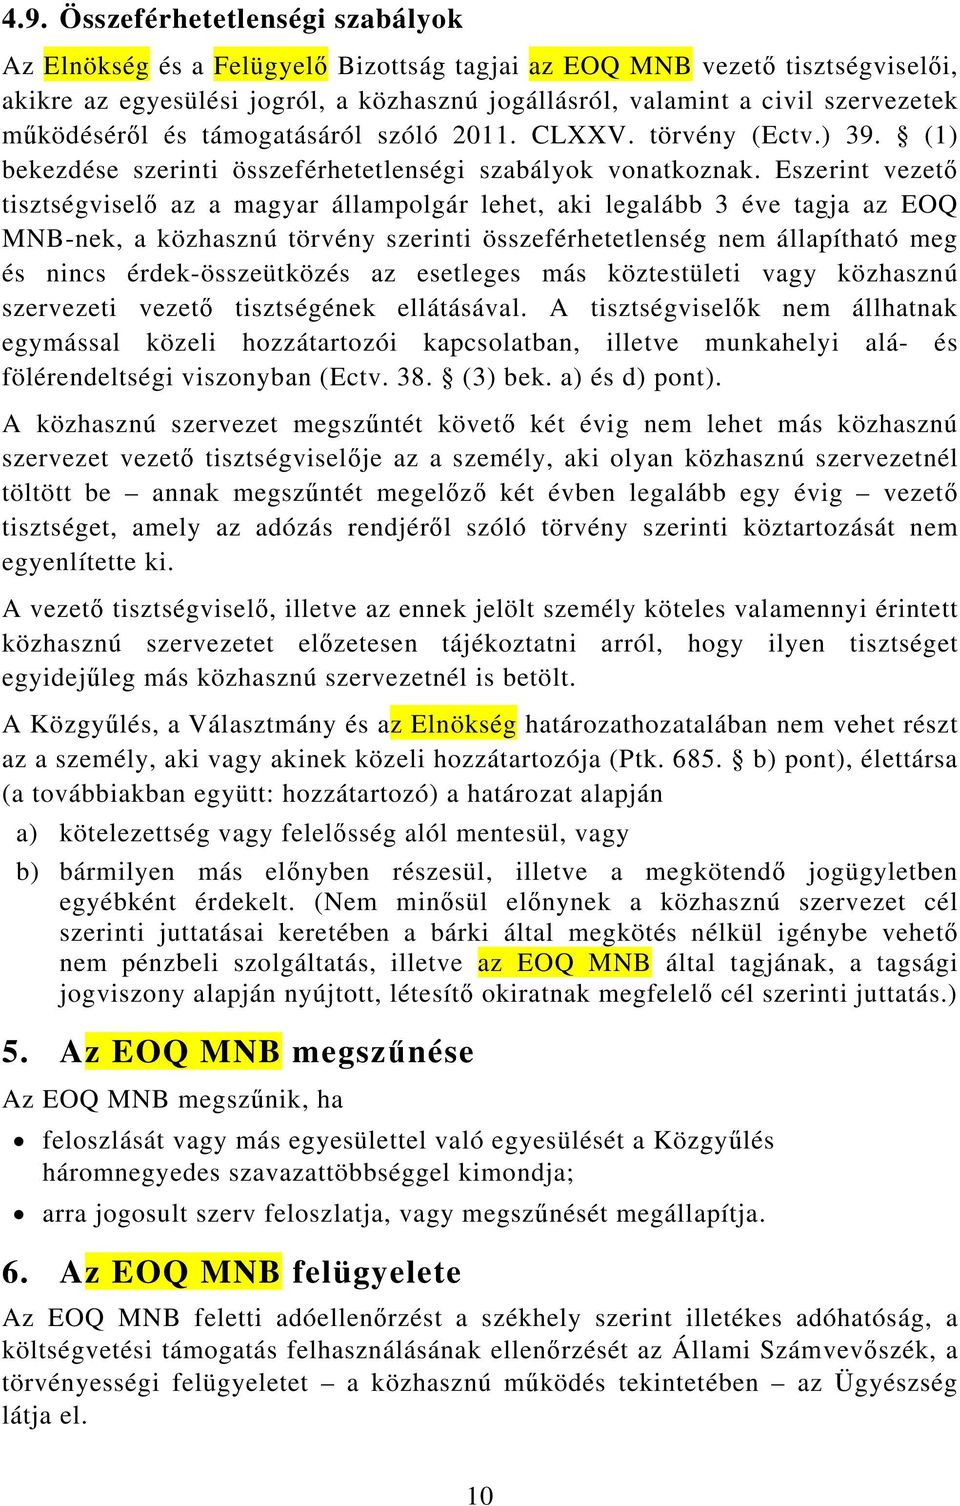 Eszerint vezető tisztségviselő az a magyar állampolgár lehet, aki legalább 3 éve tagja az EOQ MNB-nek, a közhasznú törvény szerinti összeférhetetlenség nem állapítható meg és nincs érdek-összeütközés